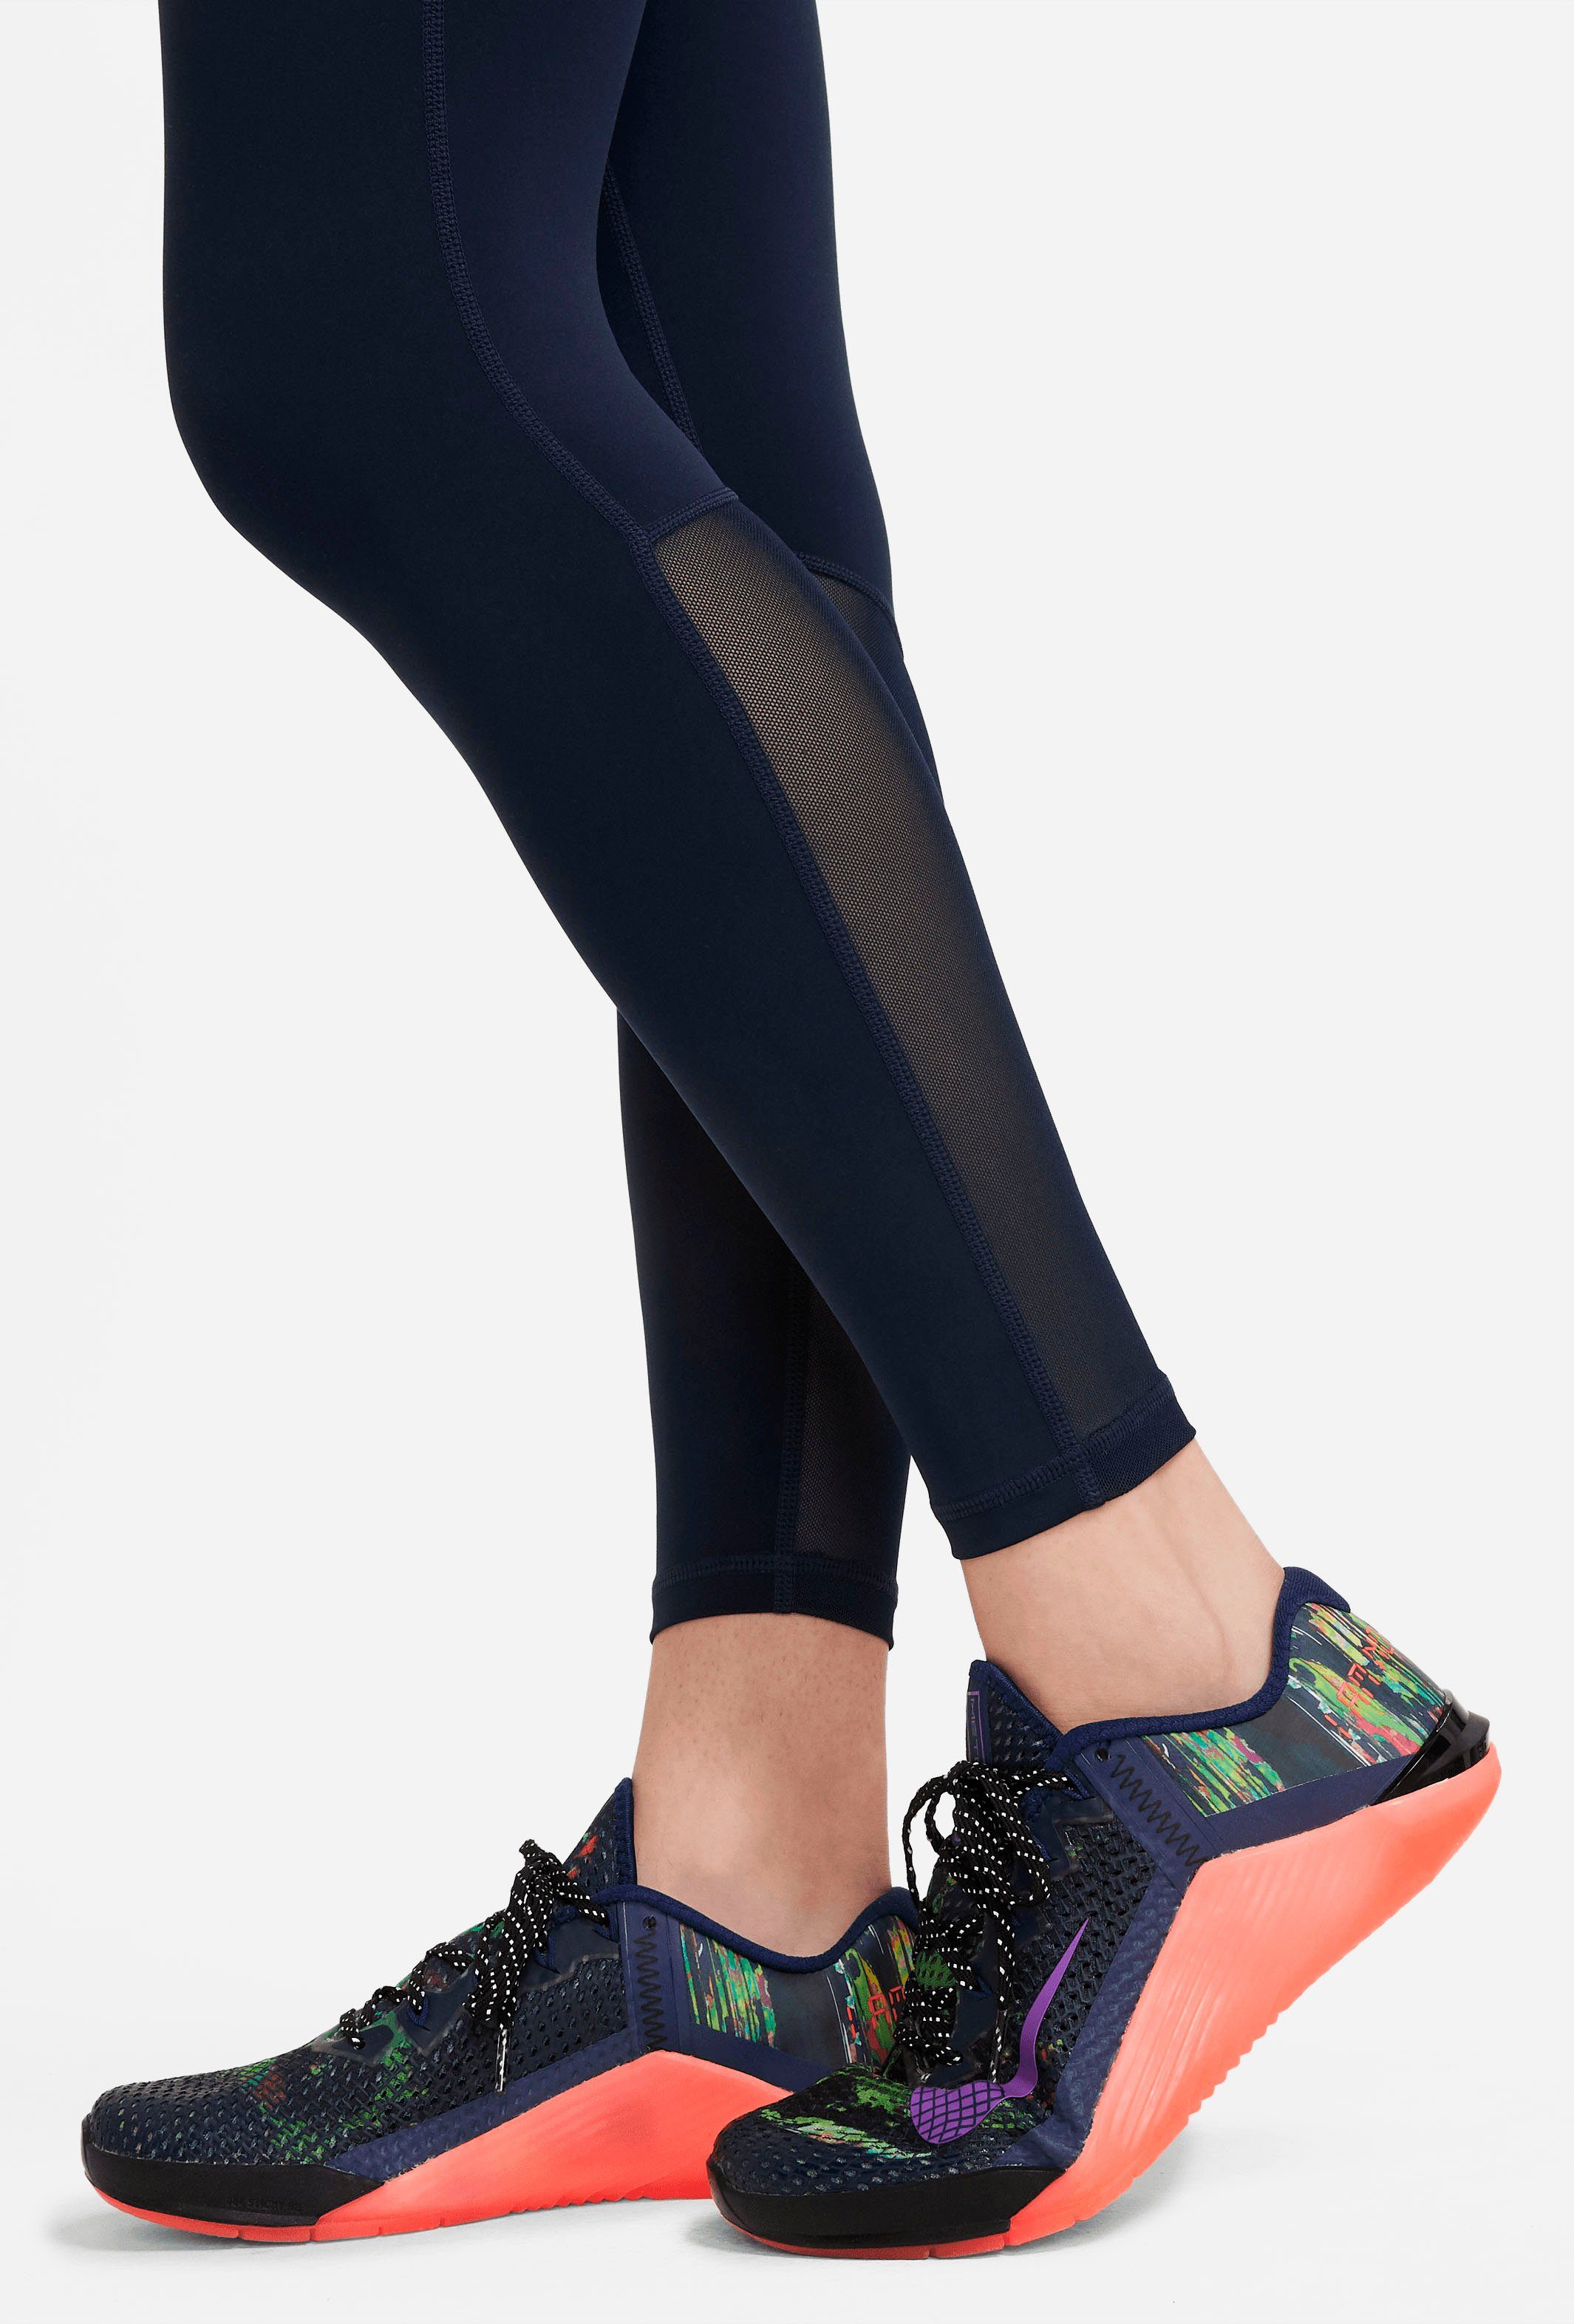 MESH-PANELED LEGGINGS WOMEN'S Nike OBSIDIAN/WHITE Trainingstights PRO MID-RISE